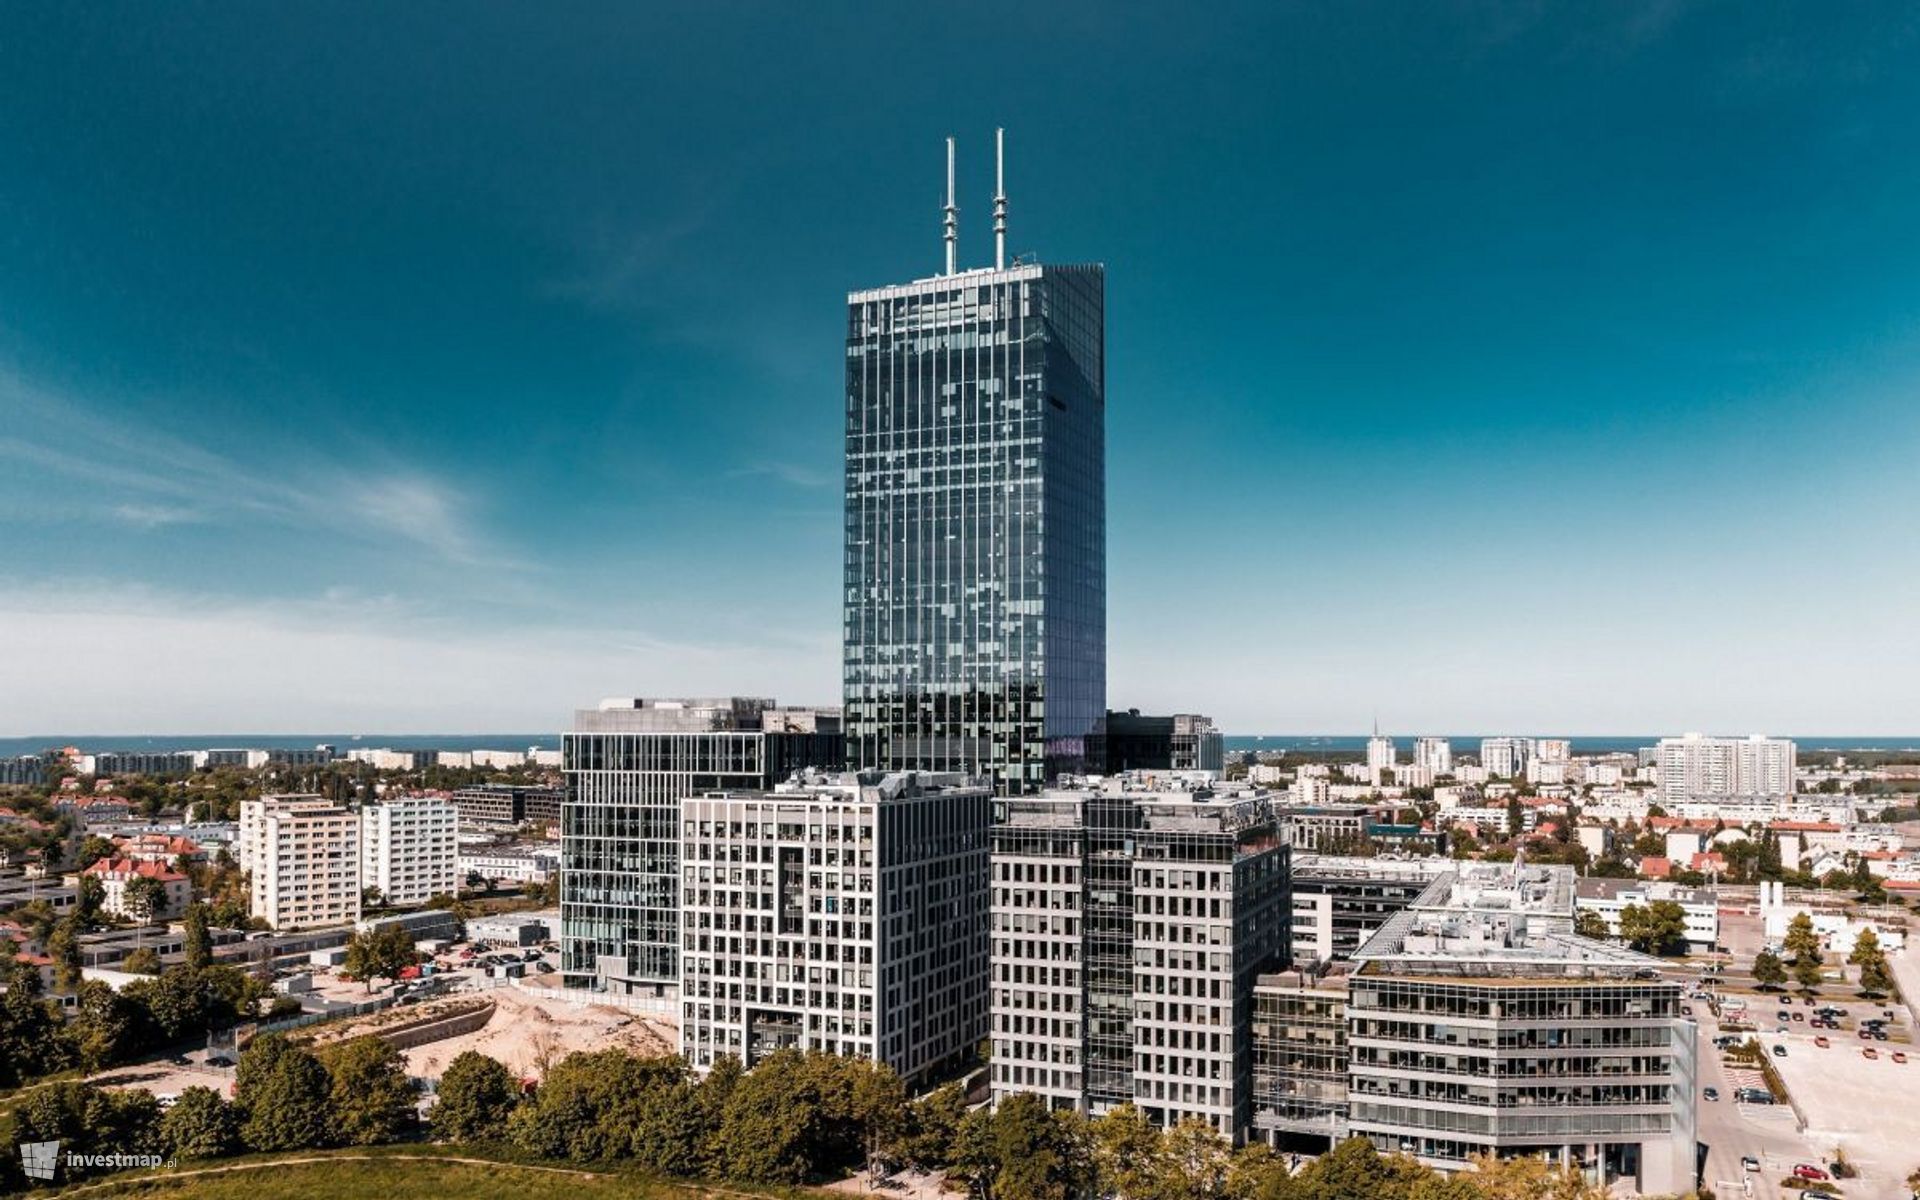 Firmy które wynajęły powierzchnie biurowe w Olivia Centre w Gdańsku rekrutują setki nowych pracowników